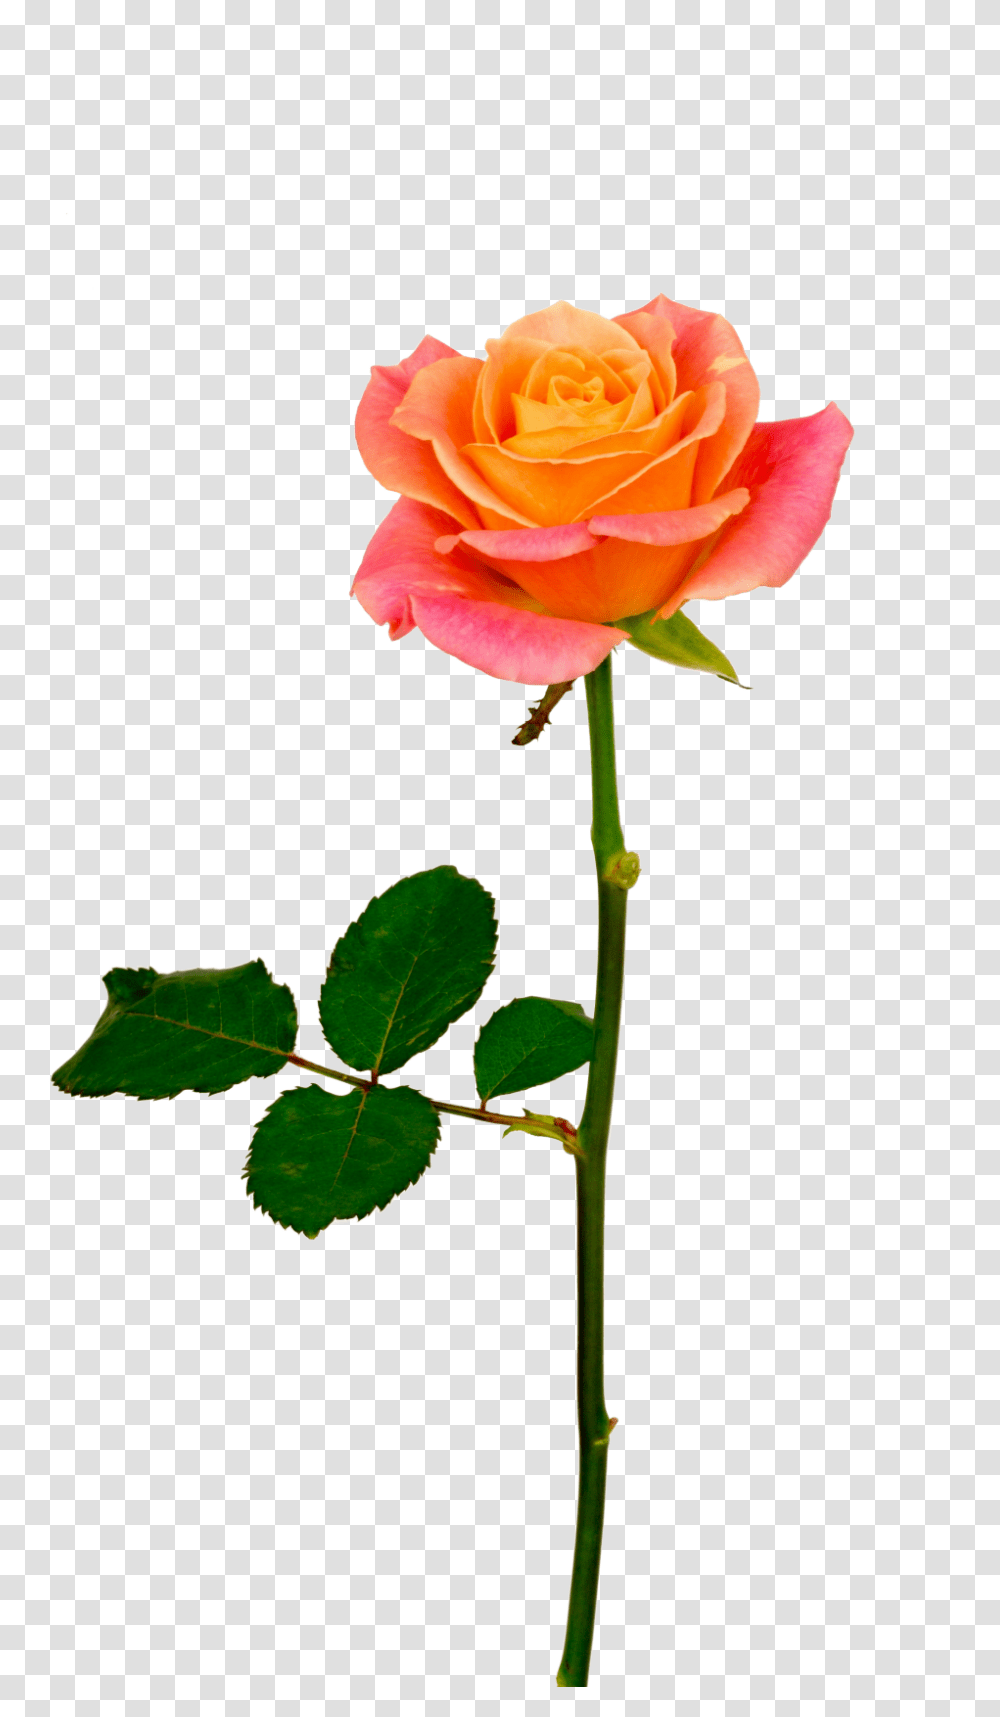 Orange Rose, Flower, Plant, Blossom, Petal Transparent Png